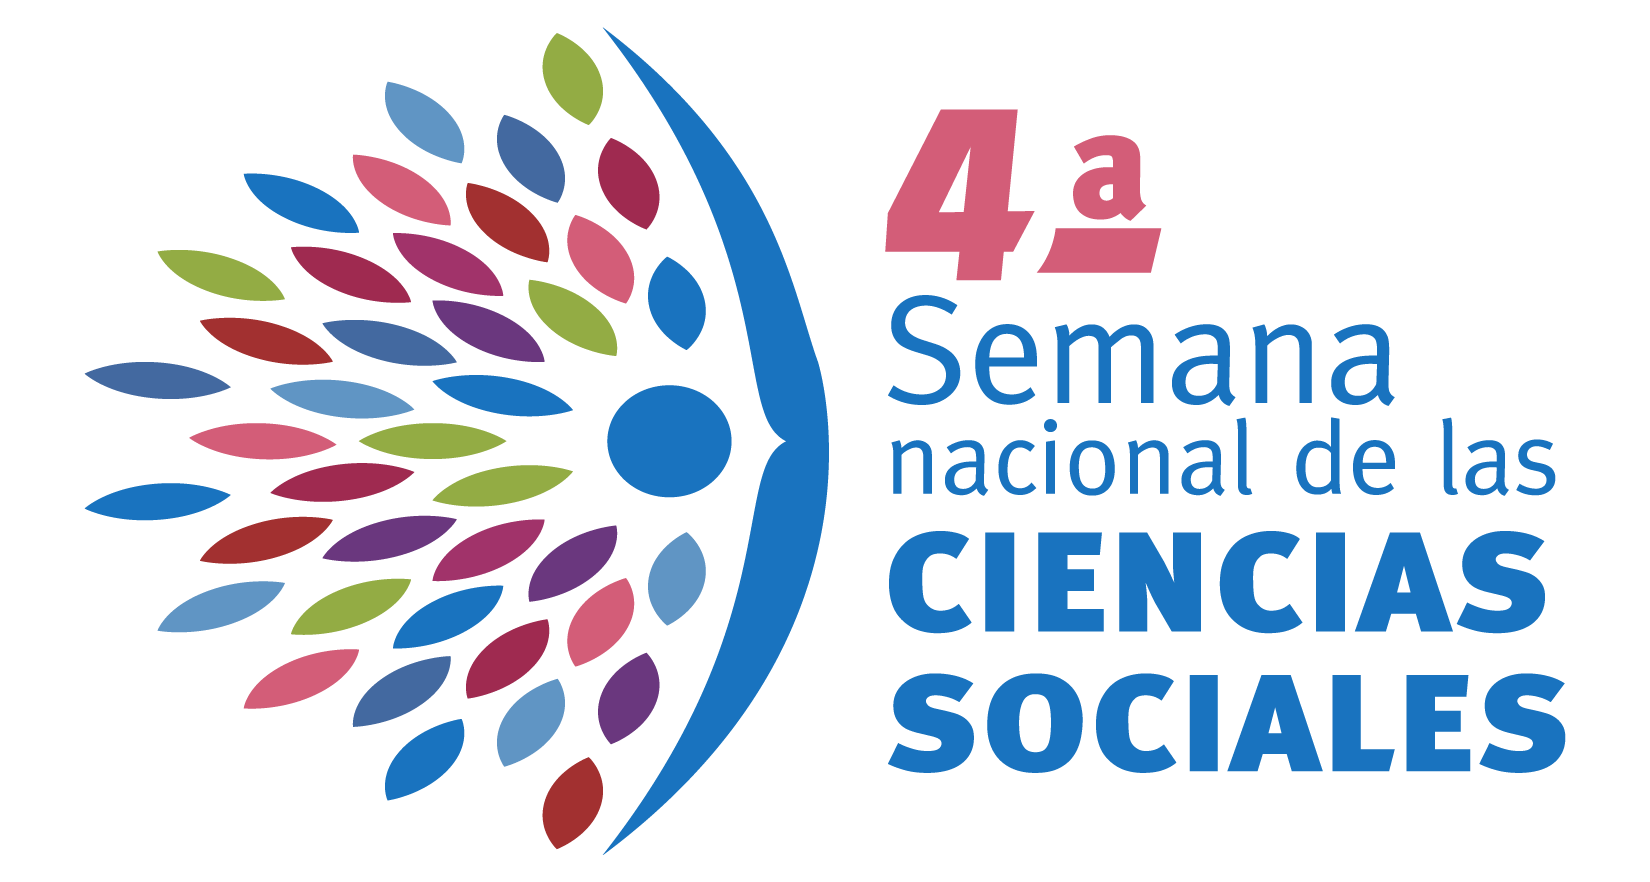 4a Semana Nacional de Ciencias Sociales